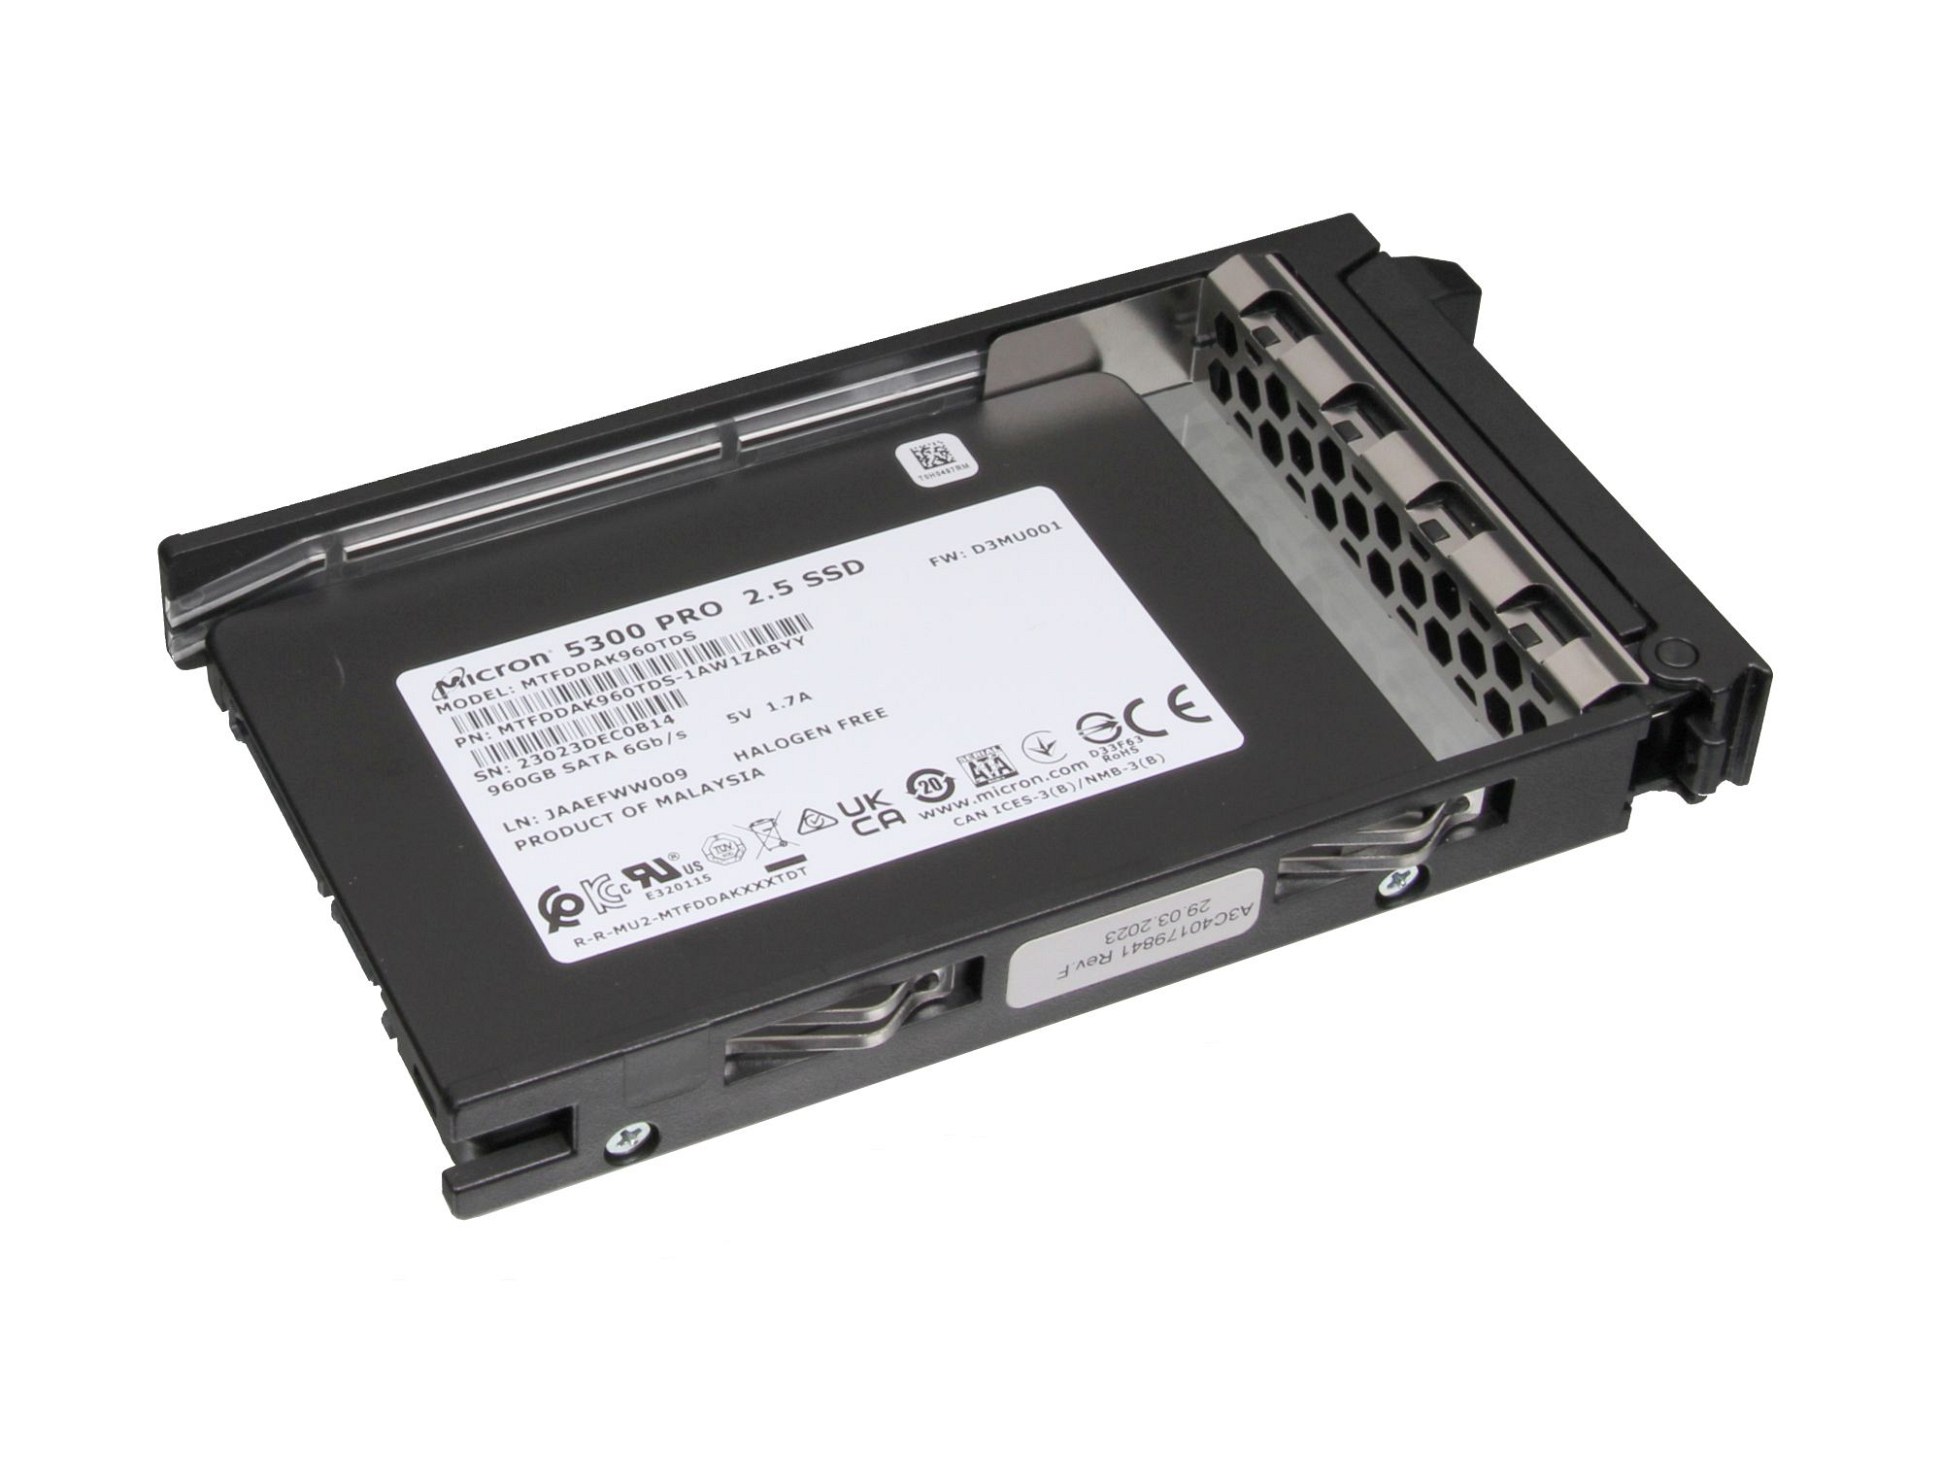 Fujitsu S26361-F5783-L960 Server Festplatte SSD 960GB (2,5 Zoll / 6,4 cm) S-ATA III (6,0 Gb/s) inkl. Hot-Plug